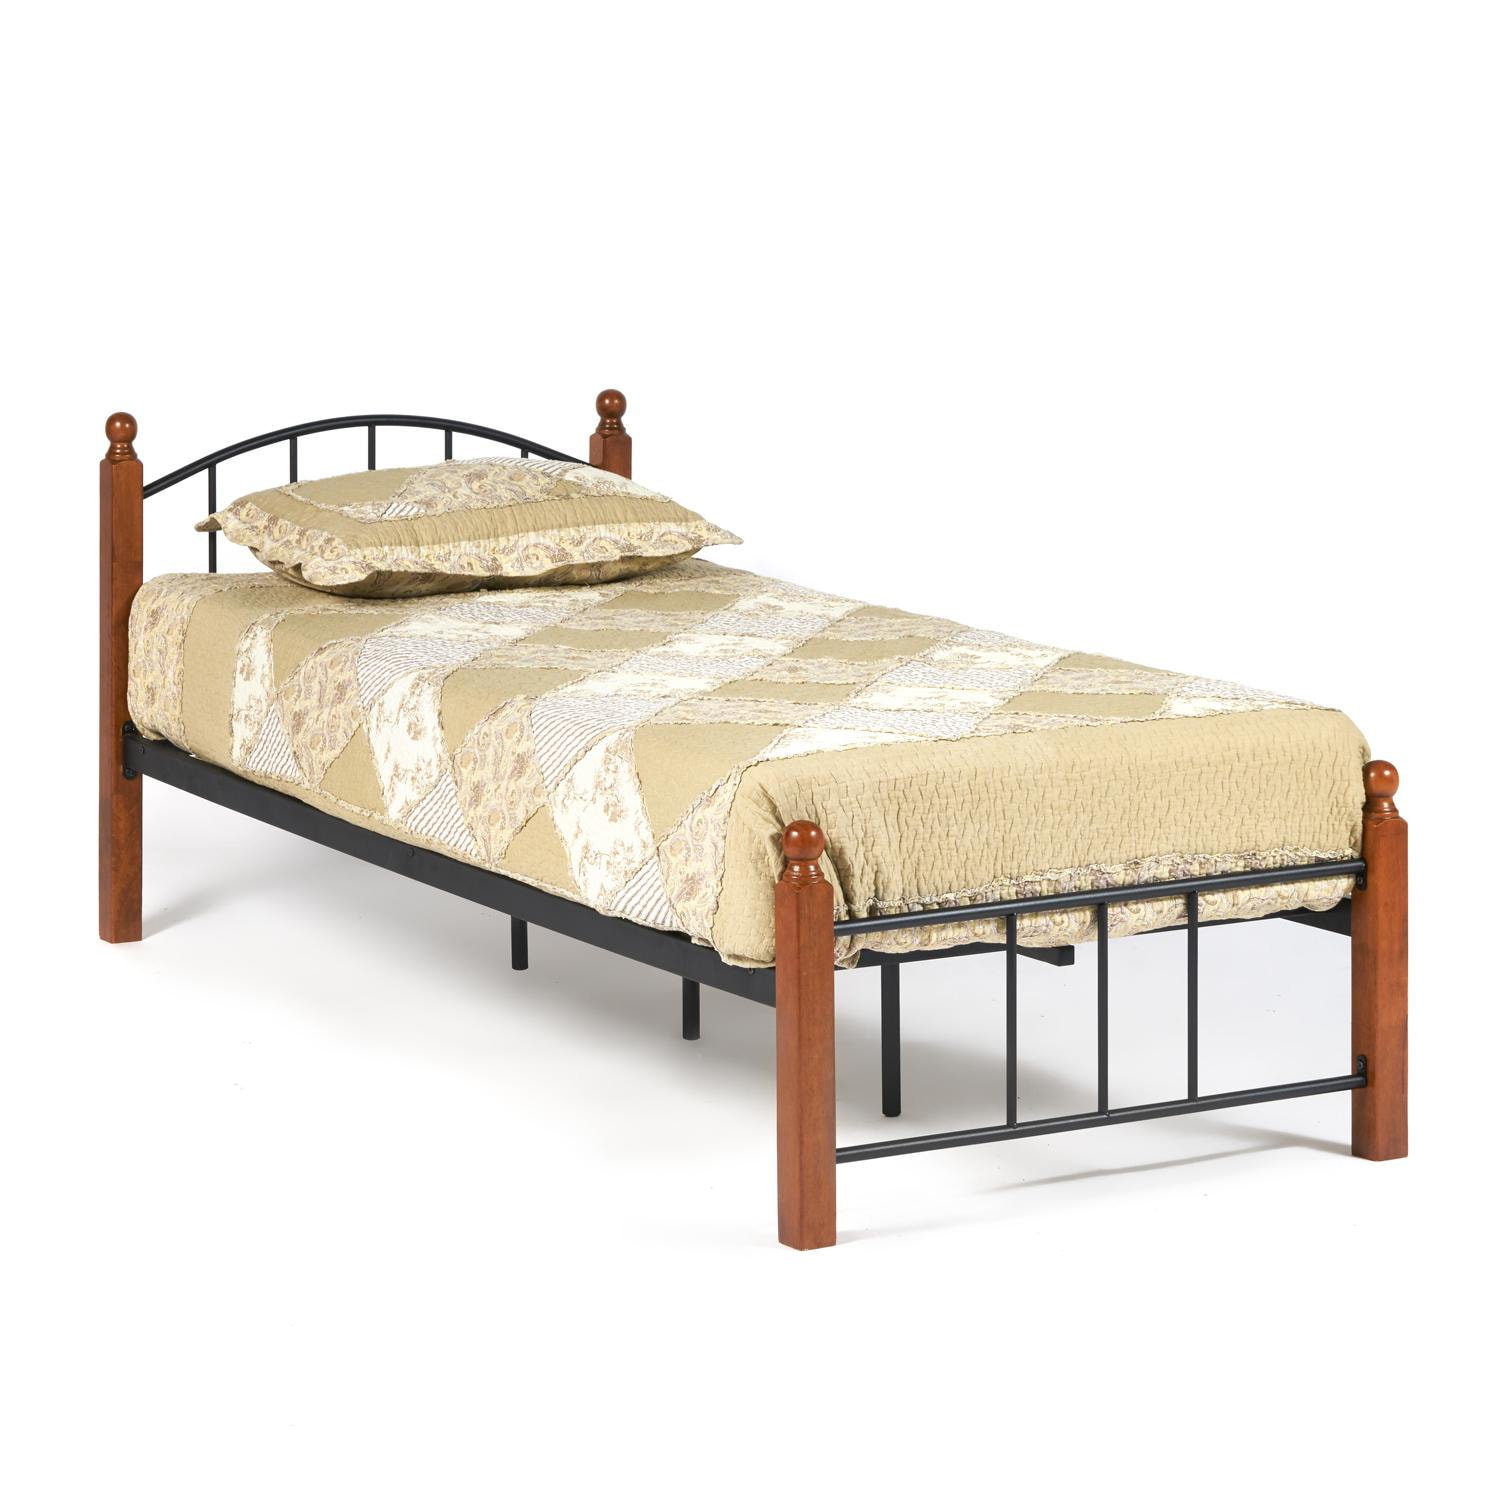 Кровать AT-915 Wood slat base дерево гевея/металл, 90*200 см (Single bed), красный дуб/черный